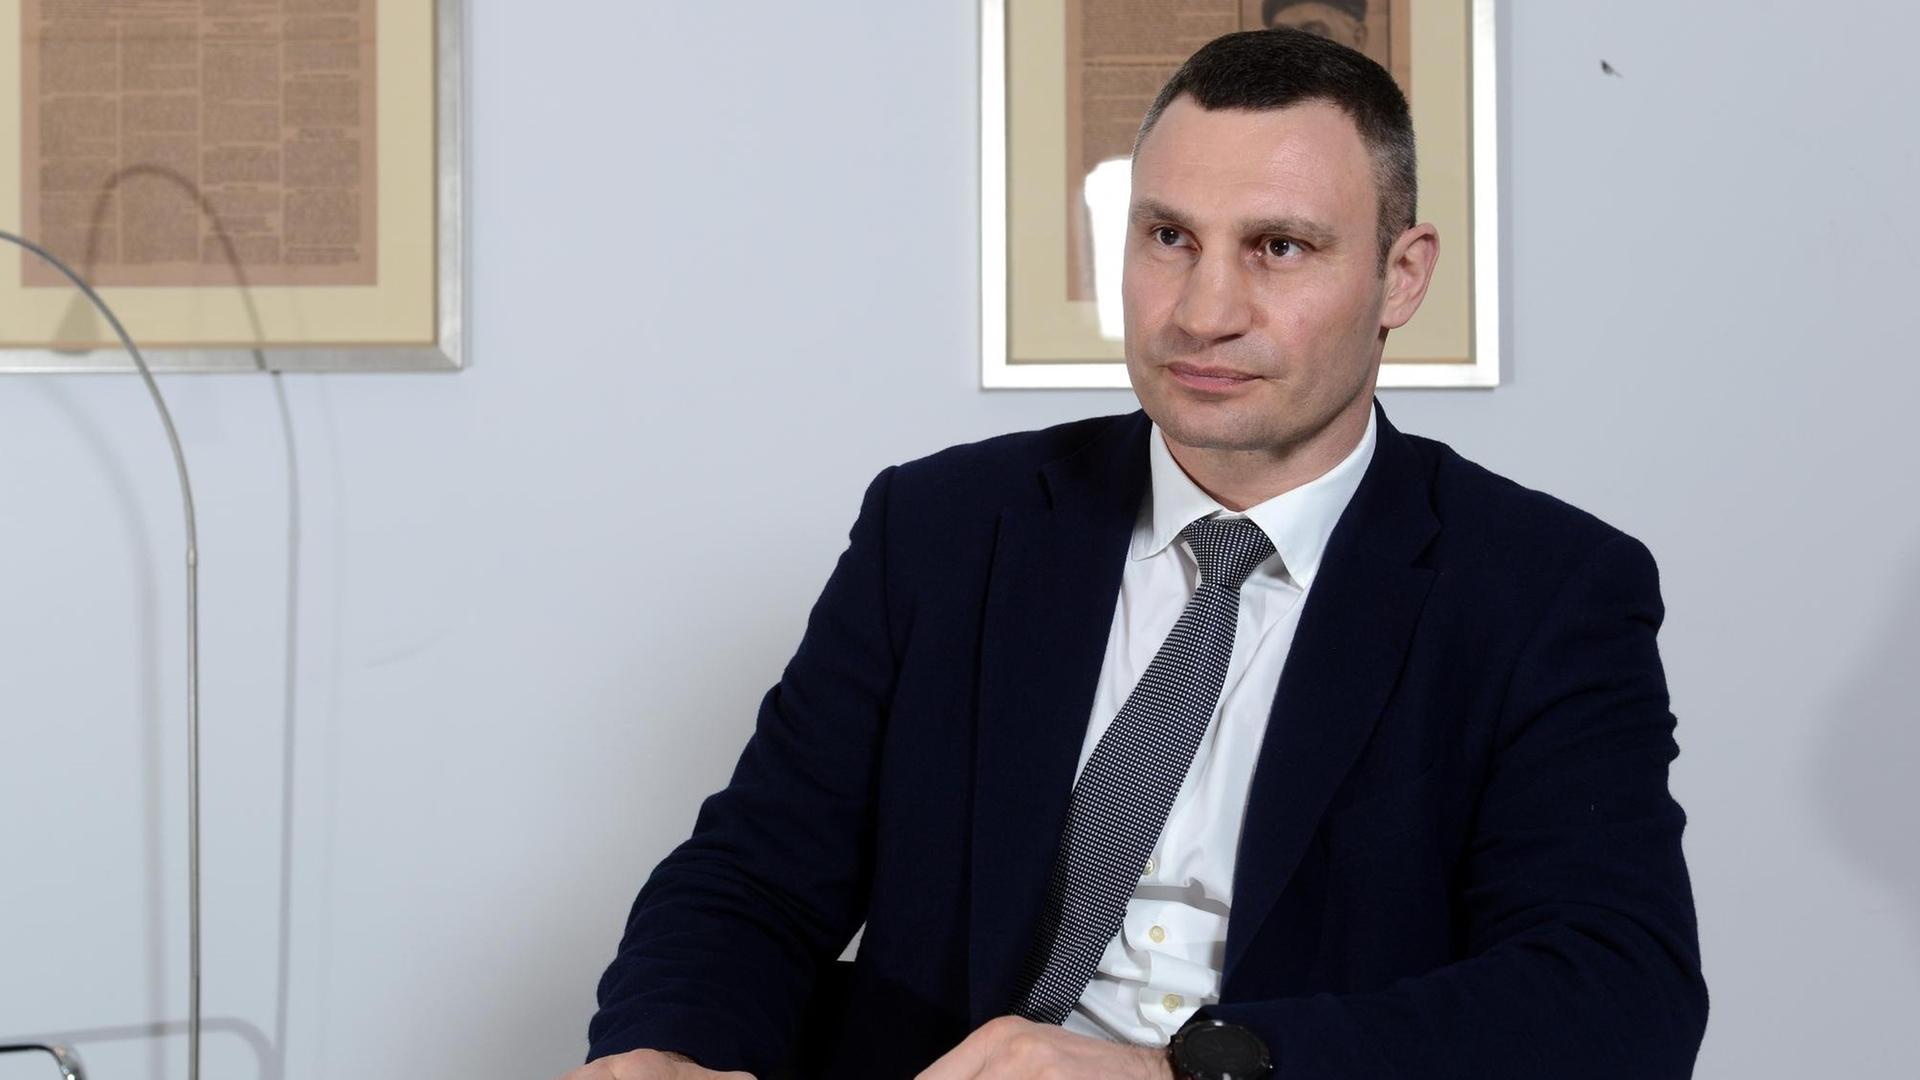 Vitali Klitschko, ukrainischer Politiker und ehemaliger Profiboxer. Er ist Gründer der Partei UDAR.